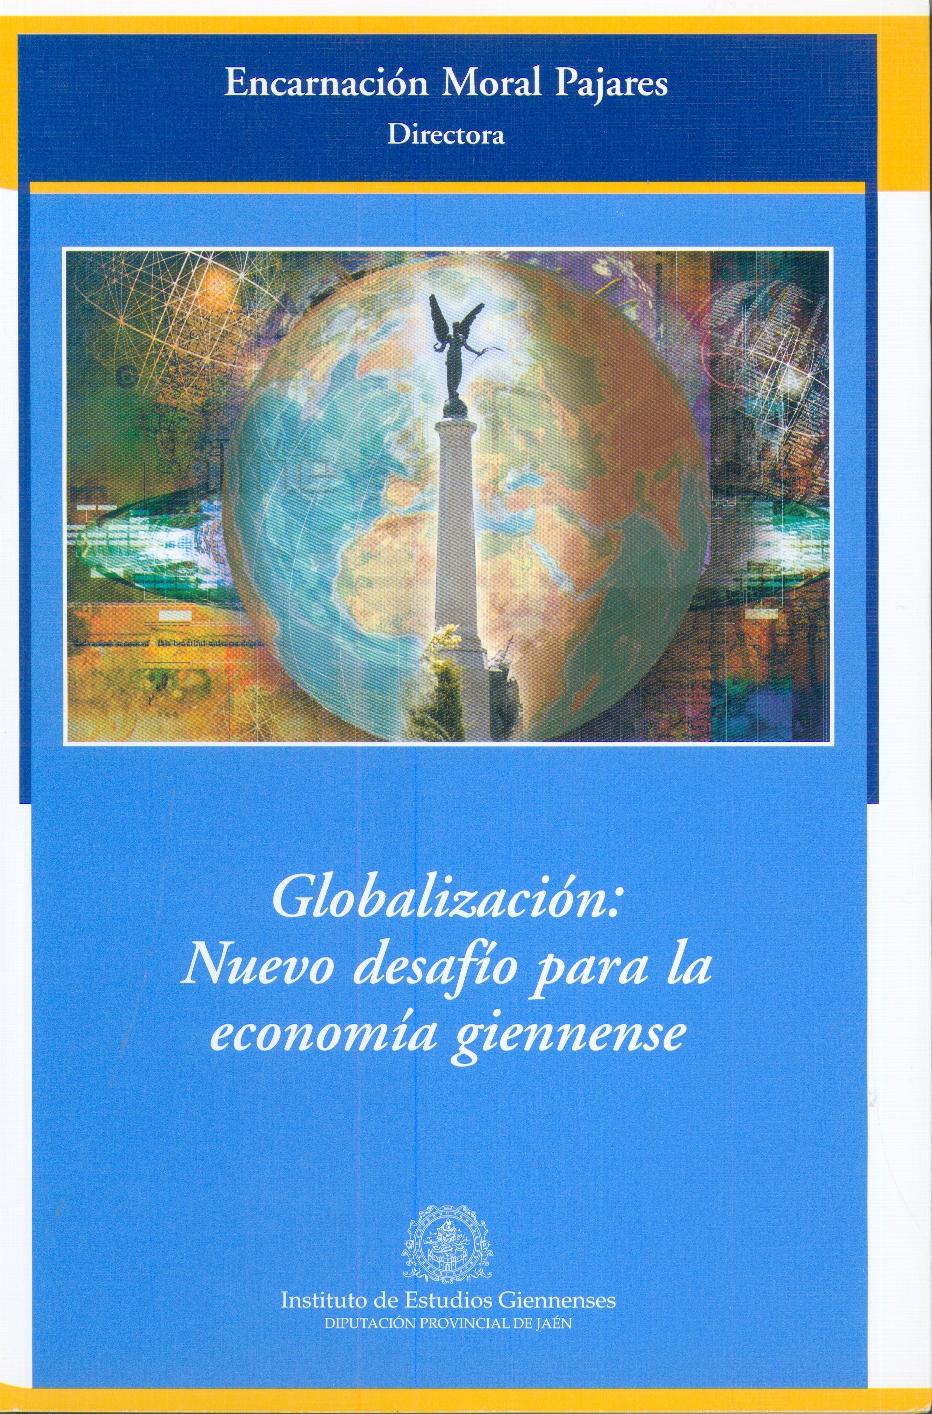 Globalización: Nuevo Desafío para la Economía Giennense